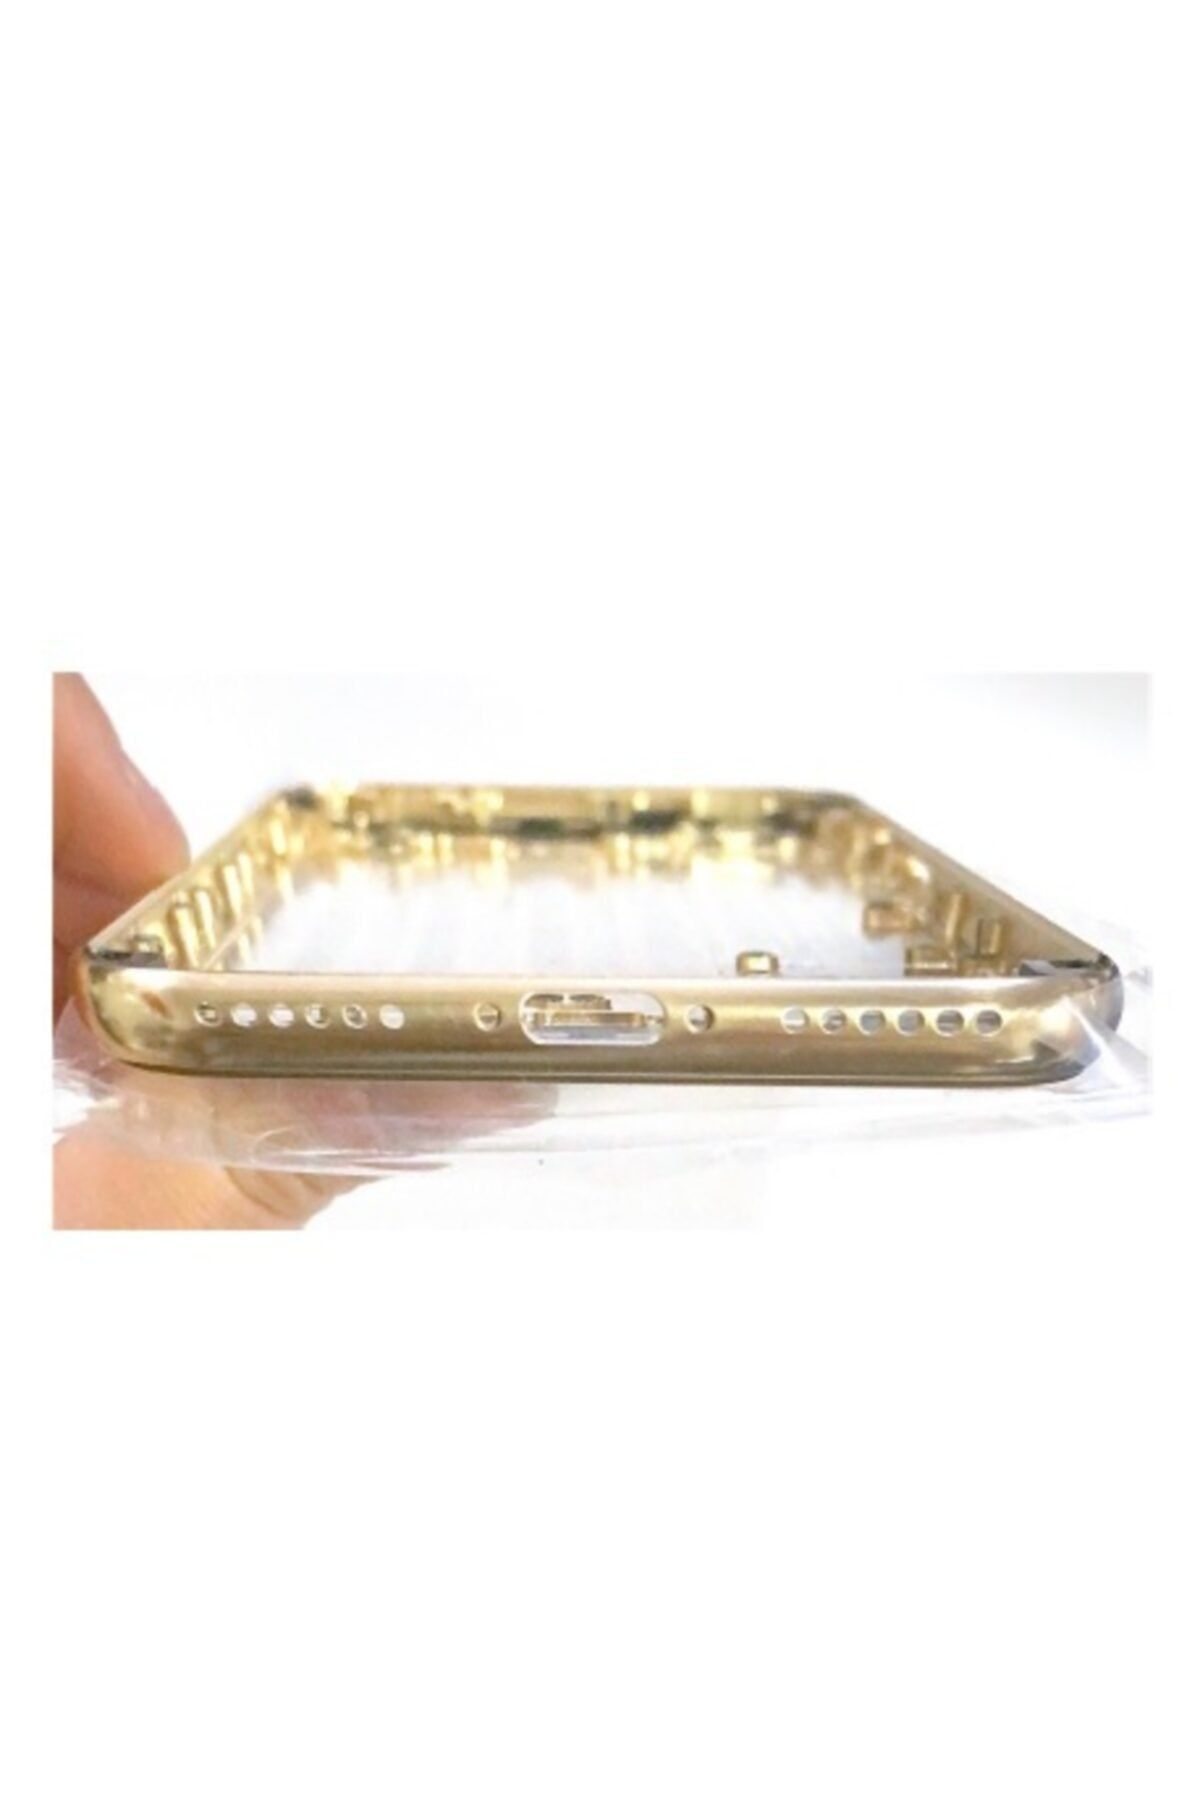 Fulldestek Iphone X Görünümlü Iphone 6g A++ Kasa (boş) -  Gold